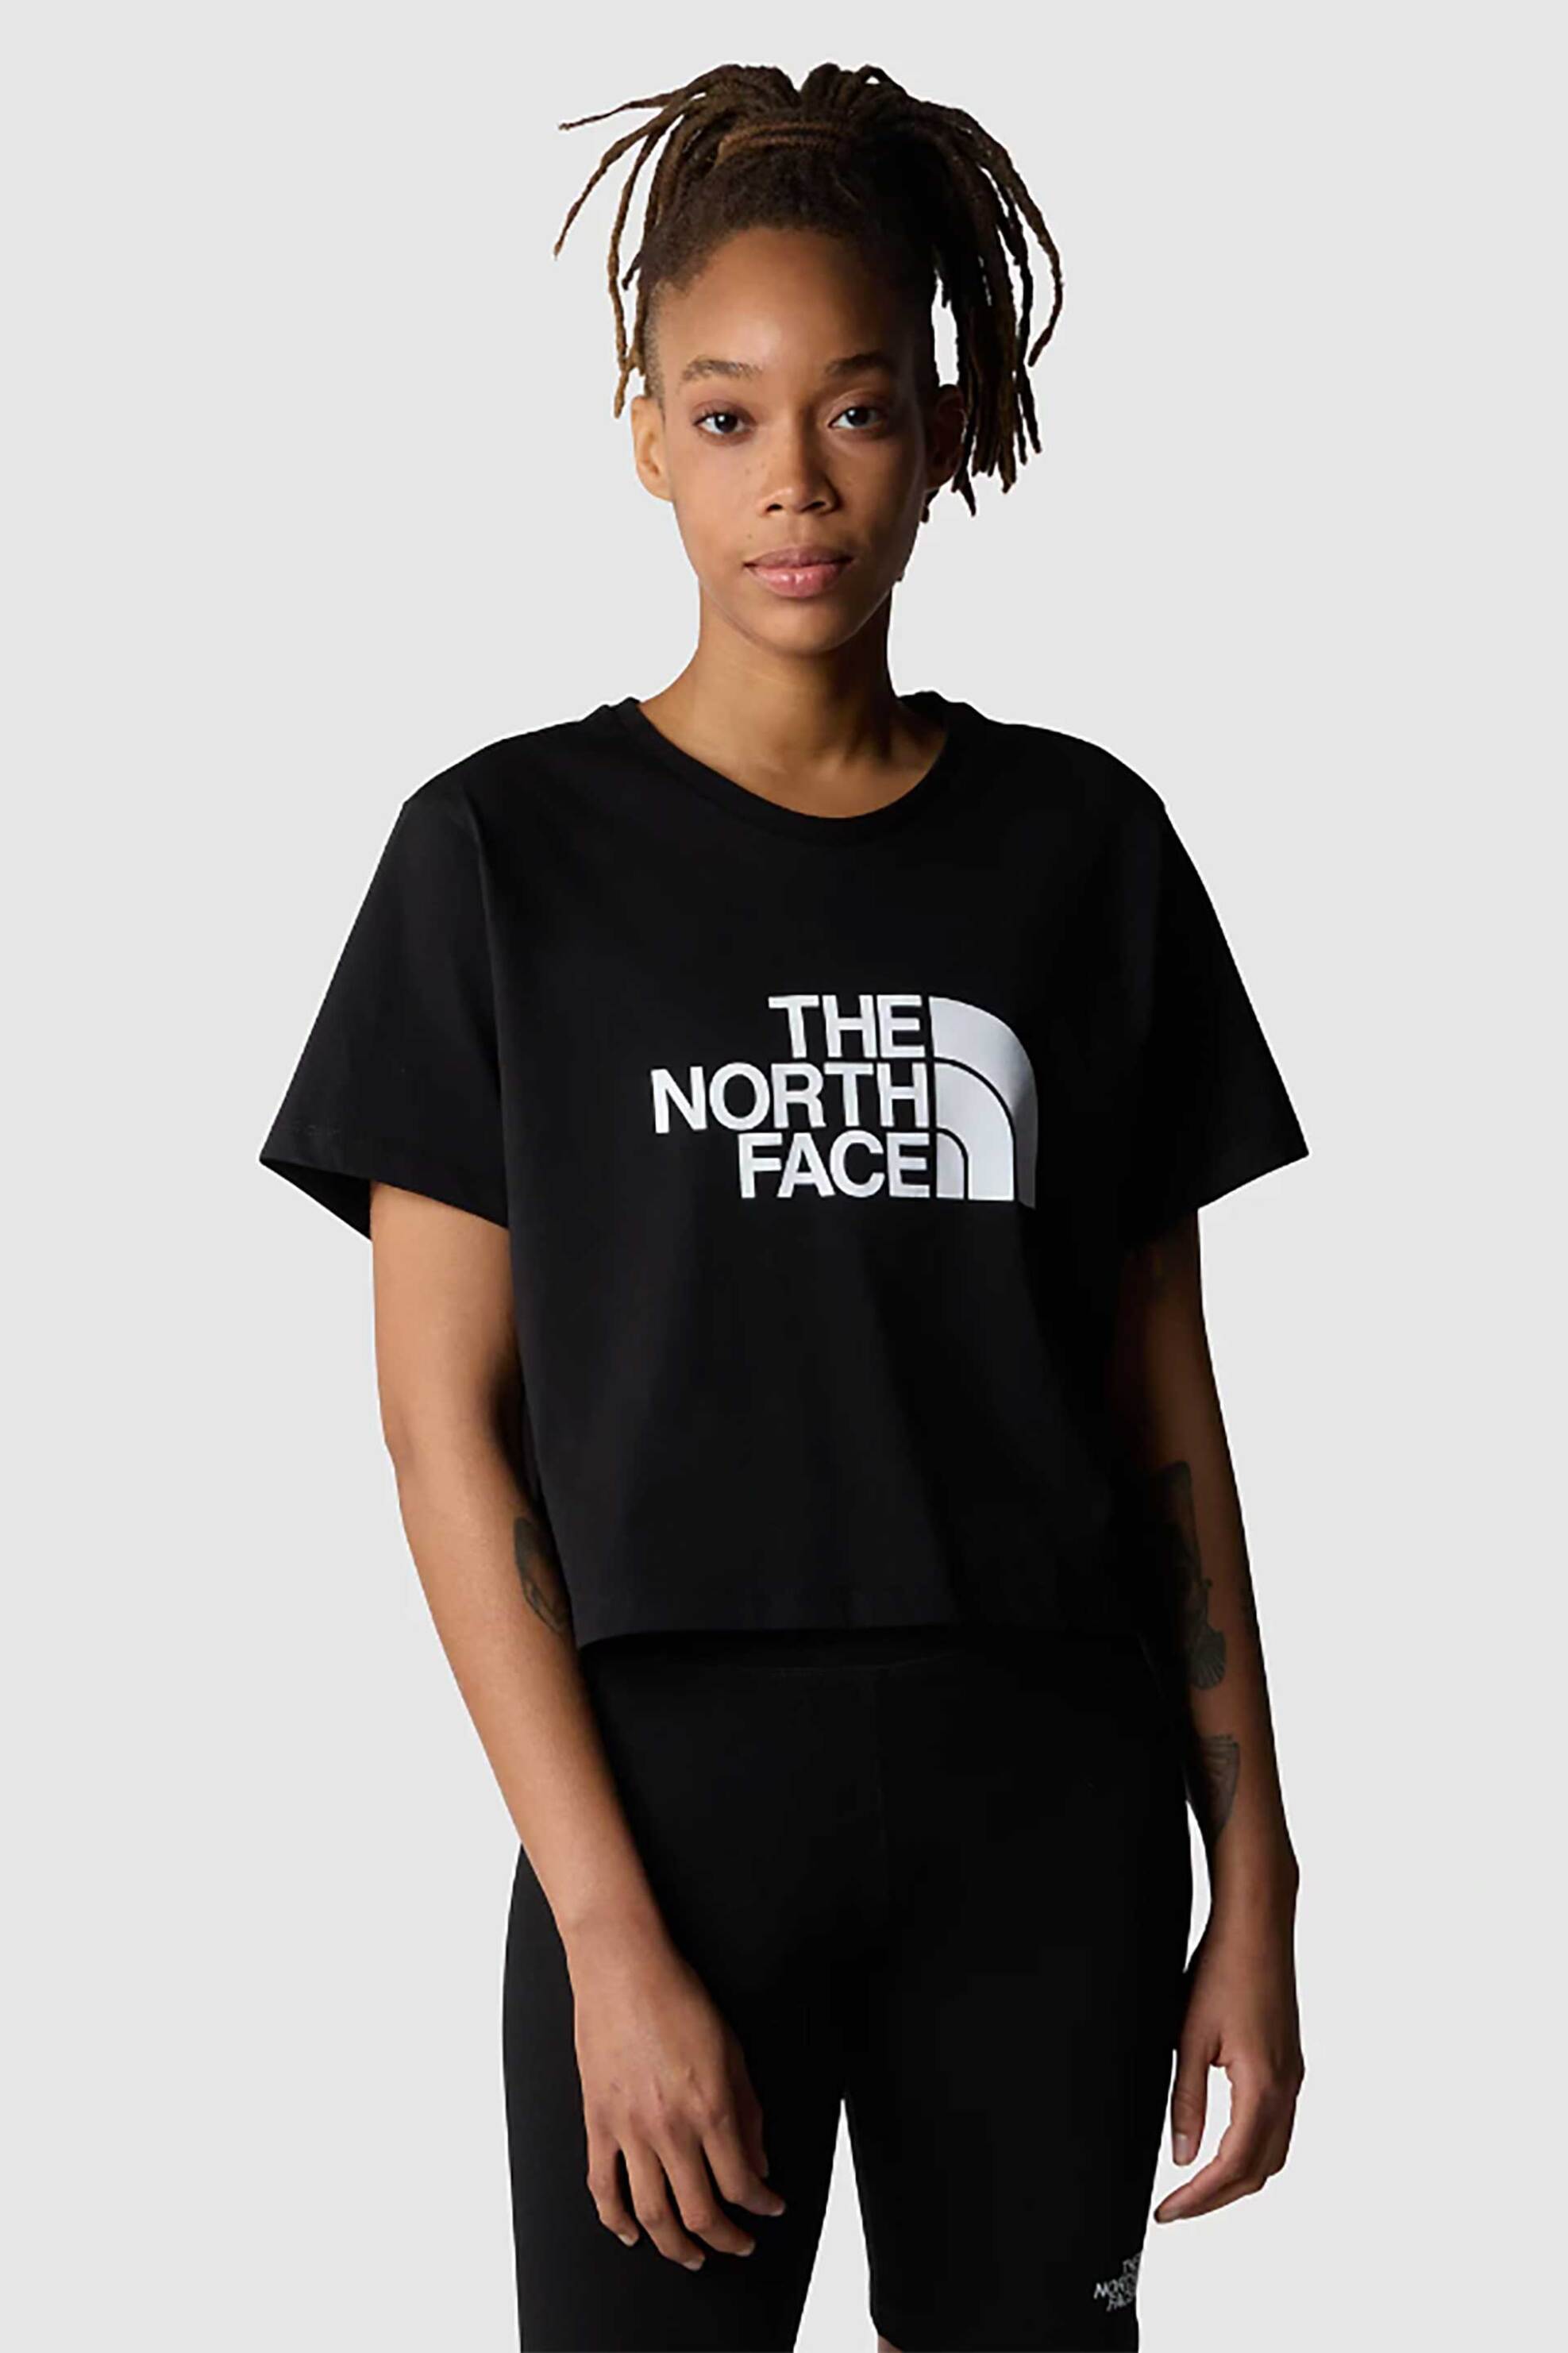 Γυναικεία Ρούχα & Αξεσουάρ > Γυναικεία Ρούχα > Γυναικεία Τοπ > Γυναικεία T-Shirts The North Face γυναικείο cropped T-shirt βαμβακερό μονόχρωμο με contrast logo prints "Easy" - NF0A87NAJK31 Μαύρο